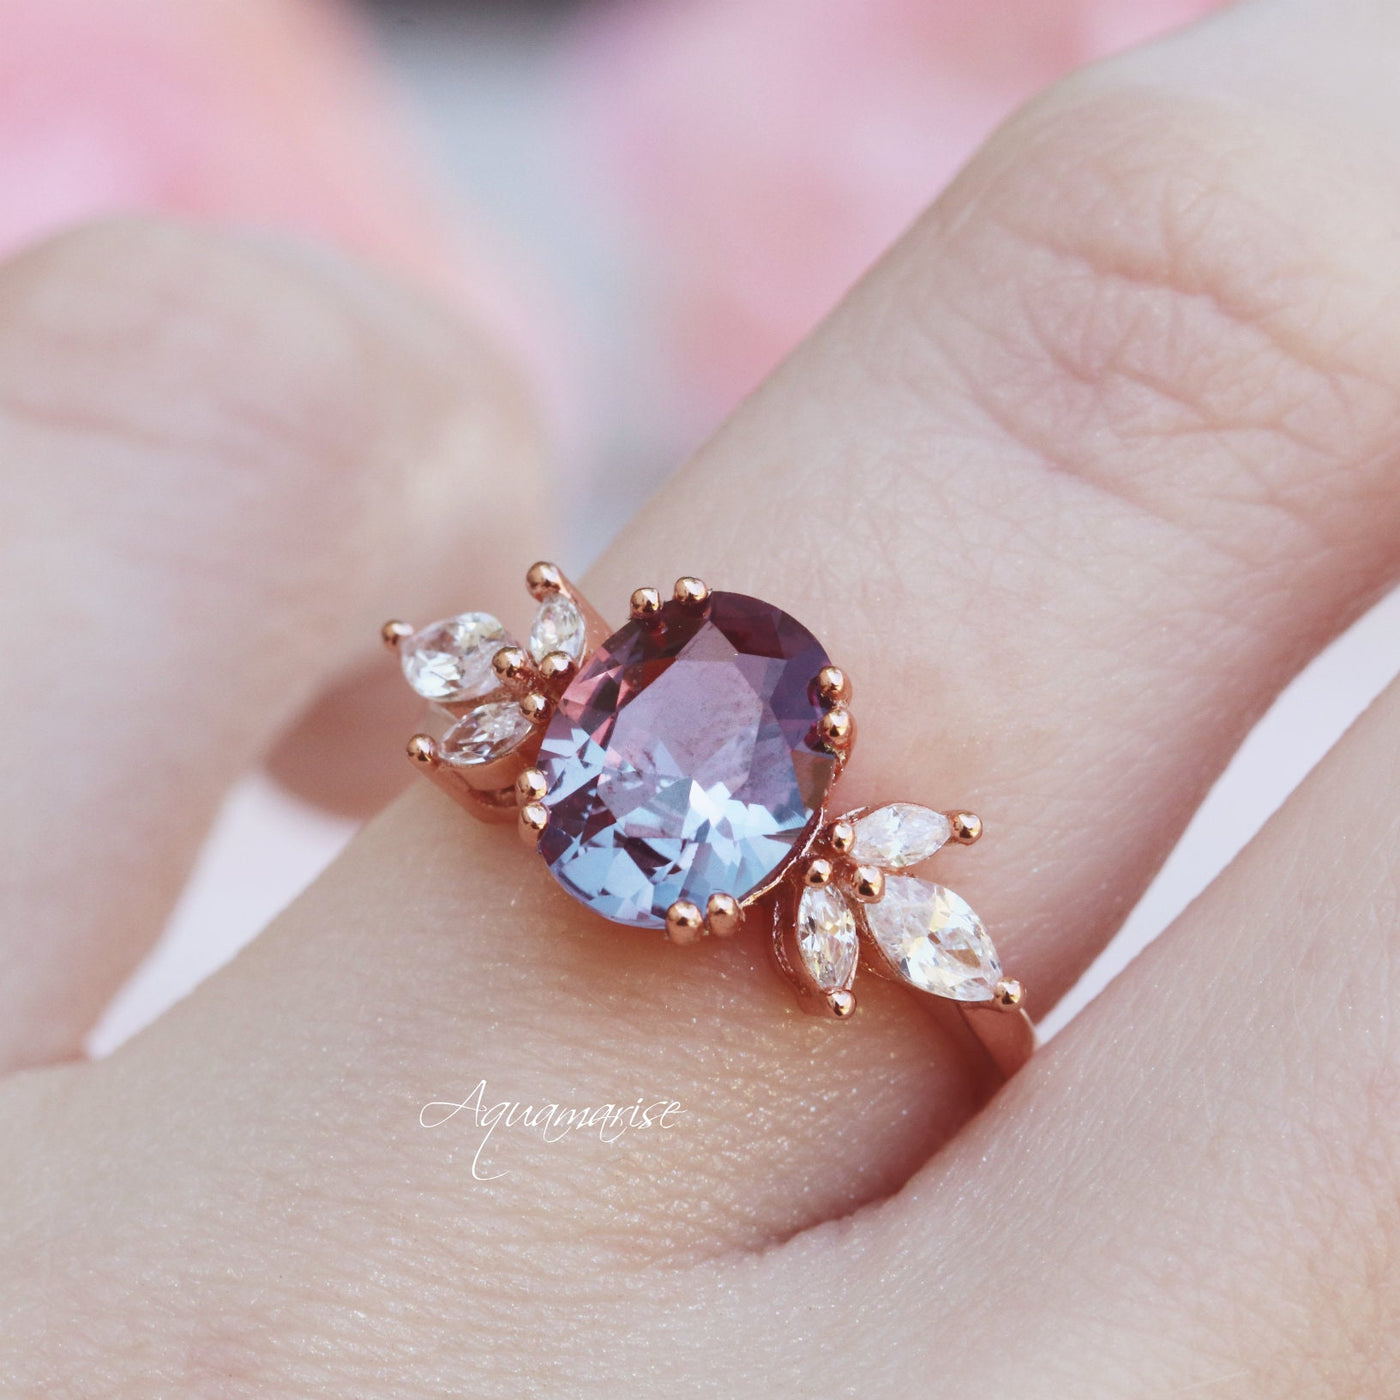 Eva Alexandrite Engagement Ring- 14K White Gold Alexandrite Ring